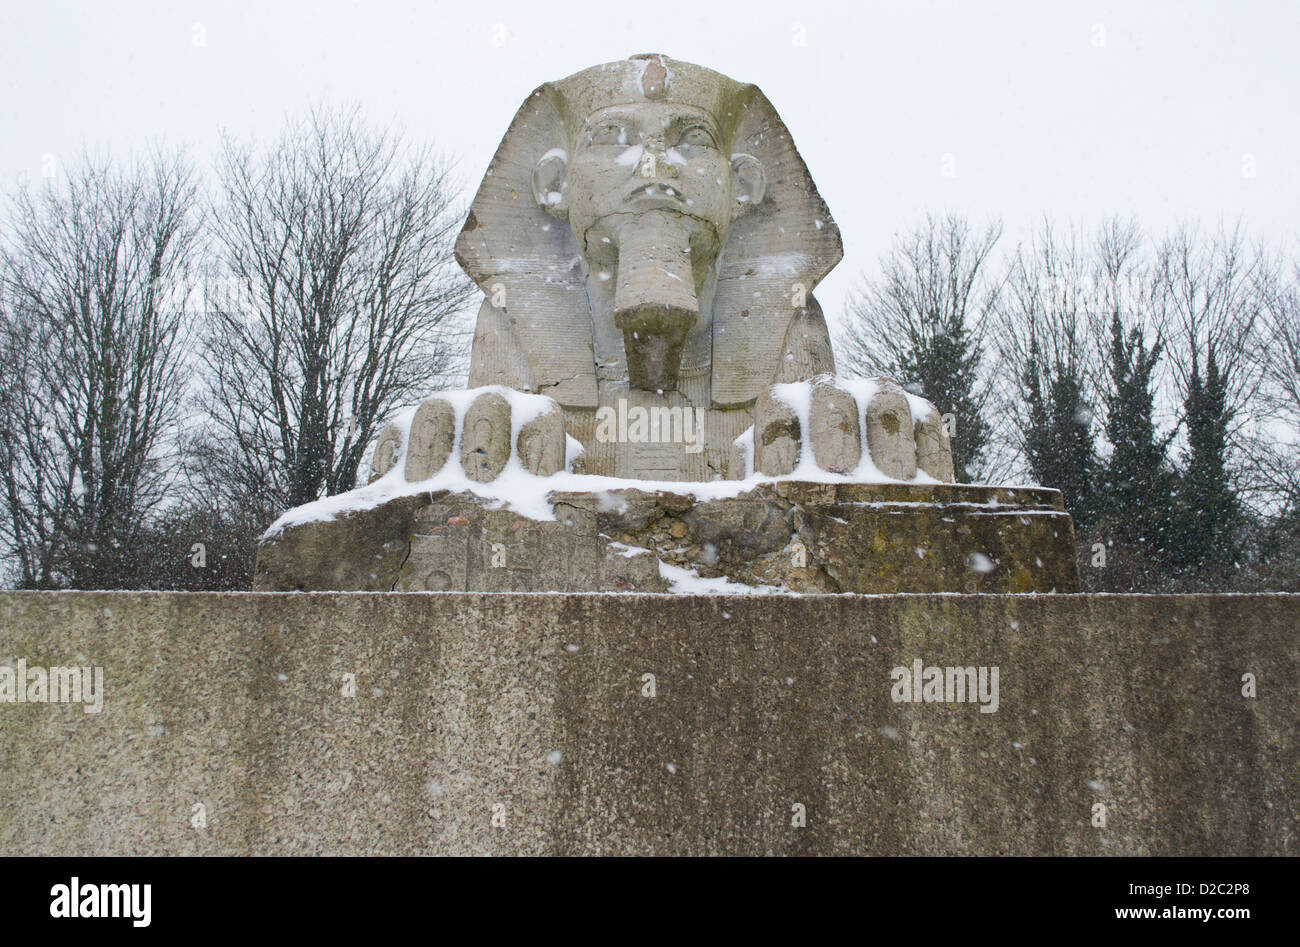 Sphinx de pierre couvert de neige dans la région de Crystal Palace Park Banque D'Images